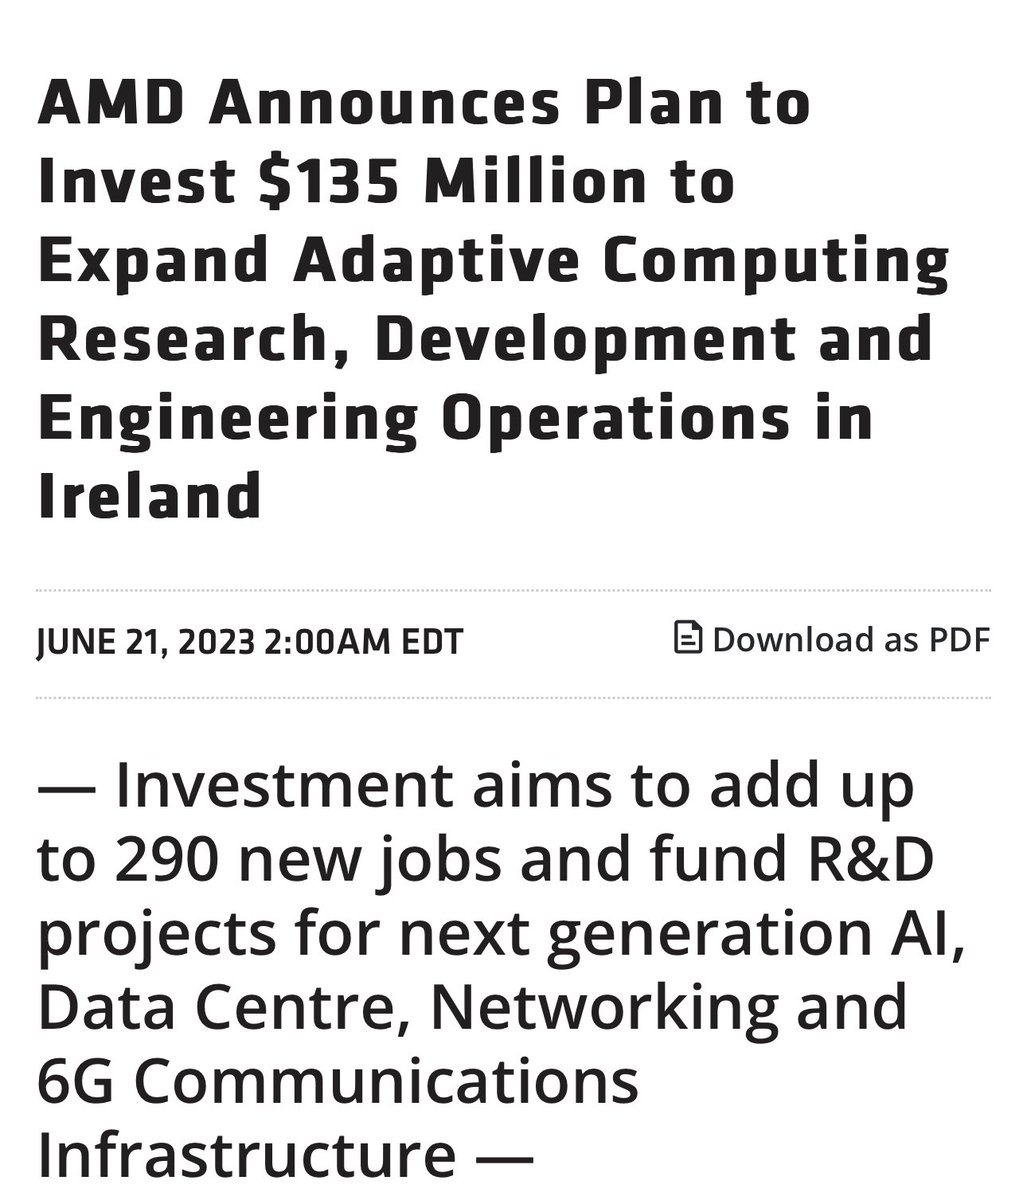 AMD gelecek 4 yılda 135 milyon $ yatırım yapacağını açıkladı, İrlanda’da bulunan Xilinx Ar-Ge merkezine. Bilindiği üzere FPGA çiplerin en büyük geliştiricisi olan Xilinx, AMD tarafından satın alınmıştı. Yeni yatırımın bölgede 290 katma değerli istihdam sağlaması bekleniyor.